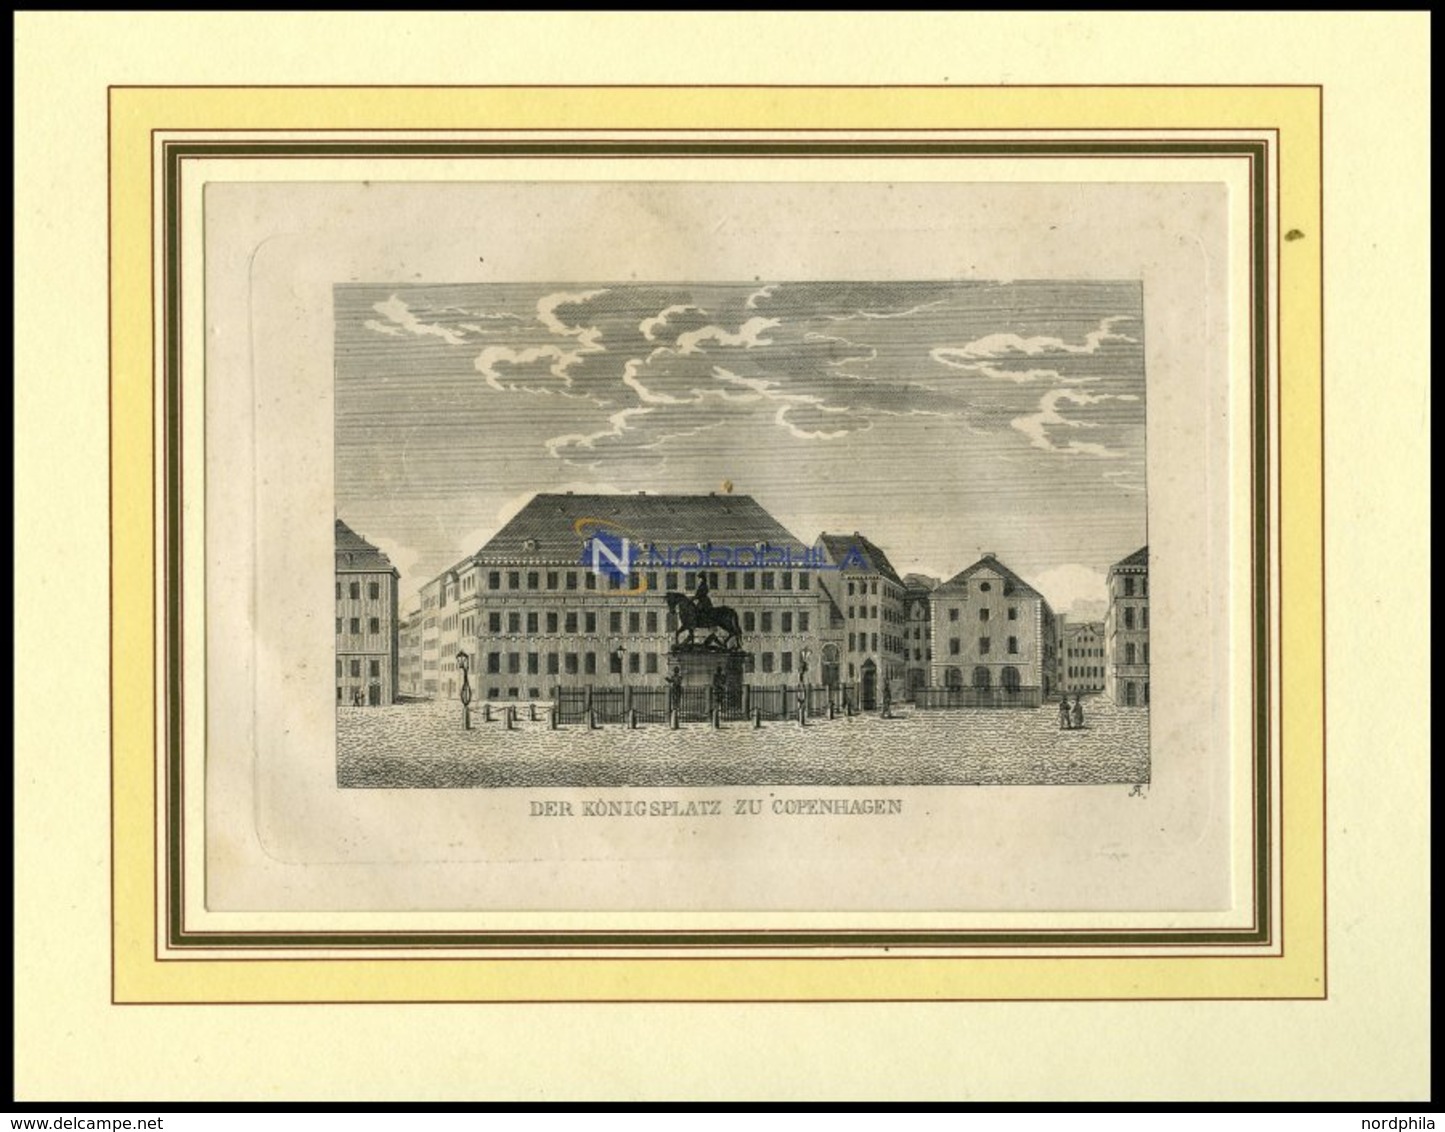 KOPENHAGEN: Der Königsplatz, Kupferstich Aus Strahlheims Wundermappe, 1837 - Litografía